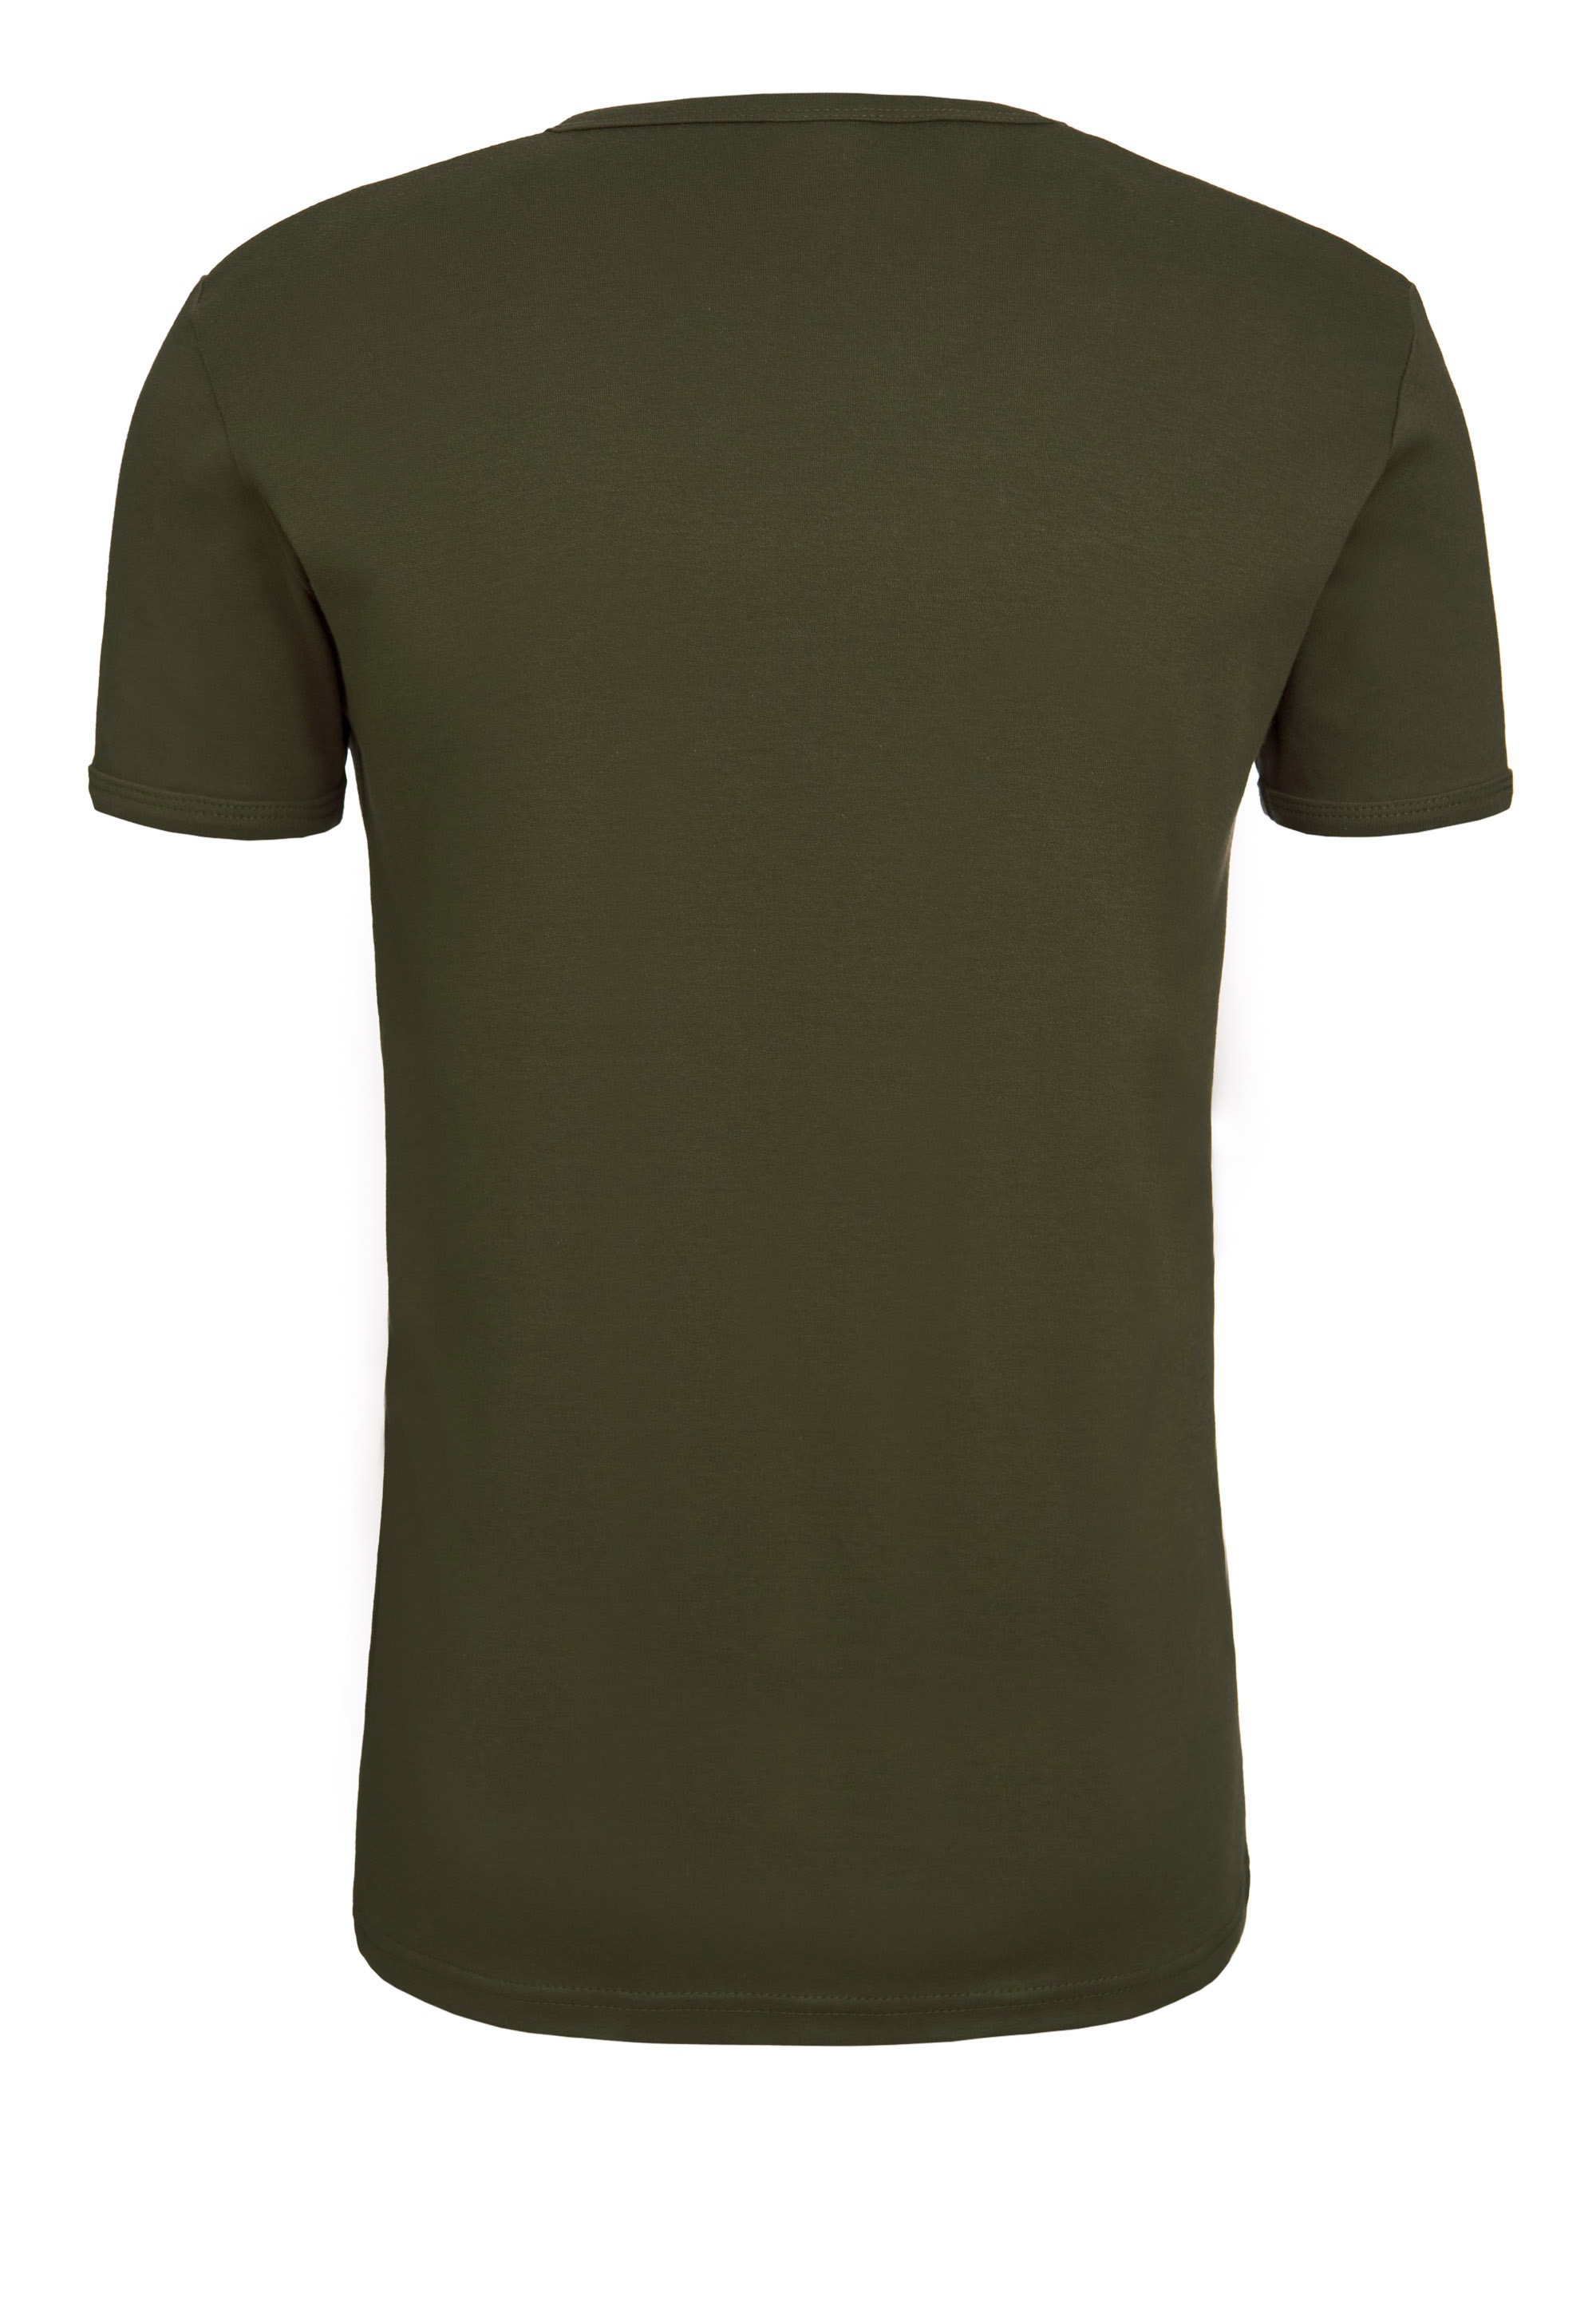 LOGOSHIRT T-Shirt »Brutus - Pop Art«, mit lizenziertem Originaldesign